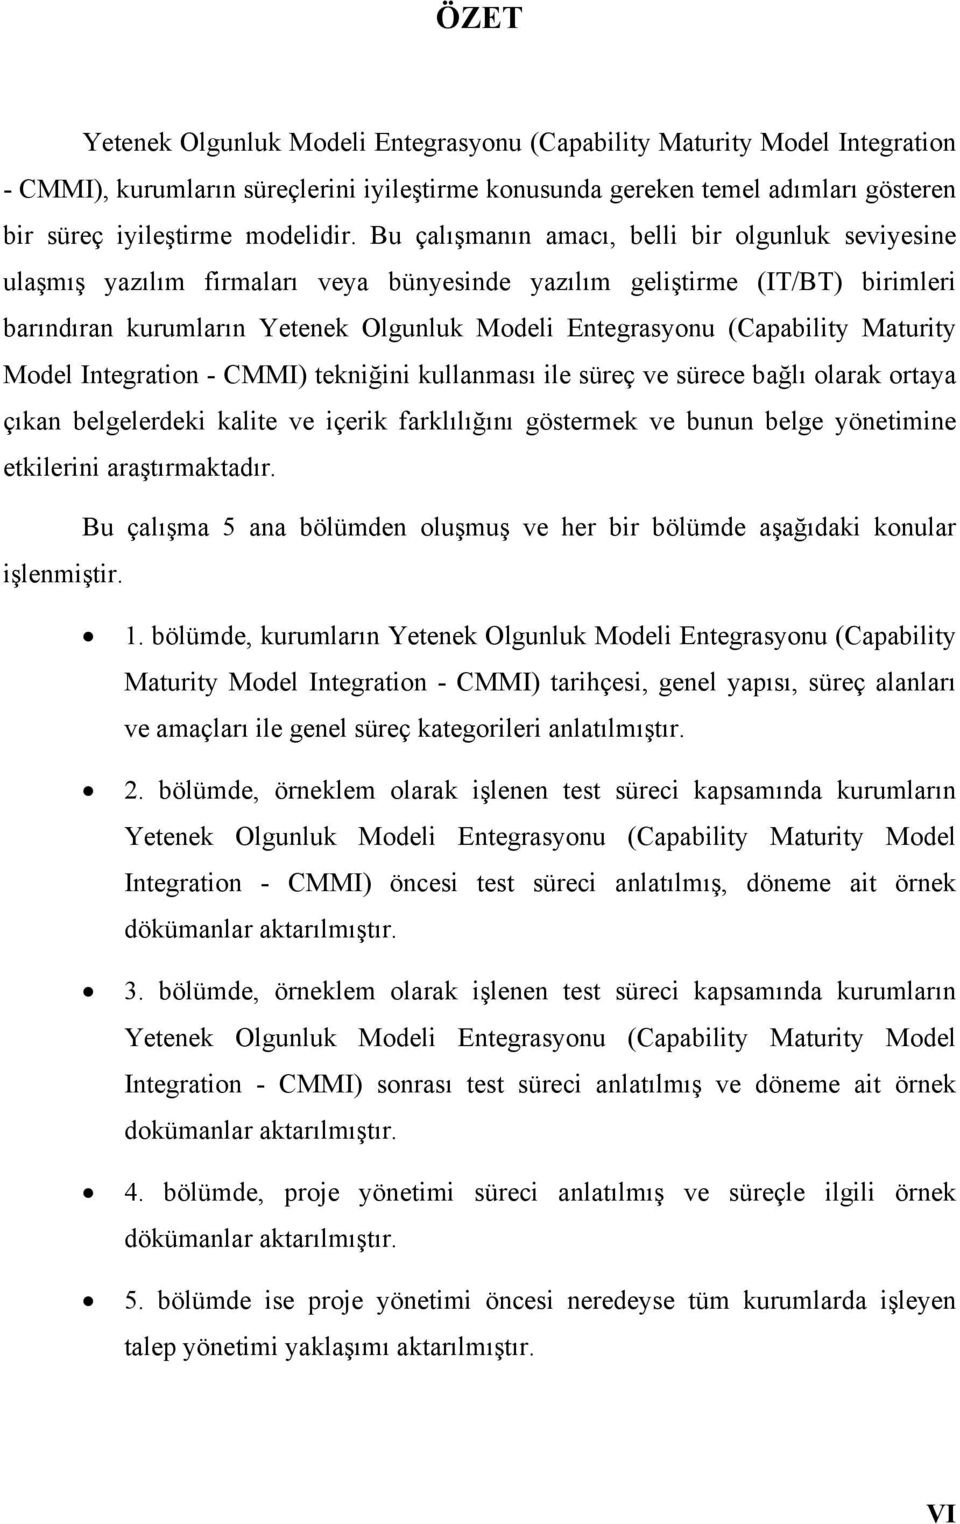 (Capability Maturity Model Integration - CMMI) tekniğini kullanması ile süreç ve sürece bağlı olarak ortaya çıkan belgelerdeki kalite ve içerik farklılığını göstermek ve bunun belge yönetimine